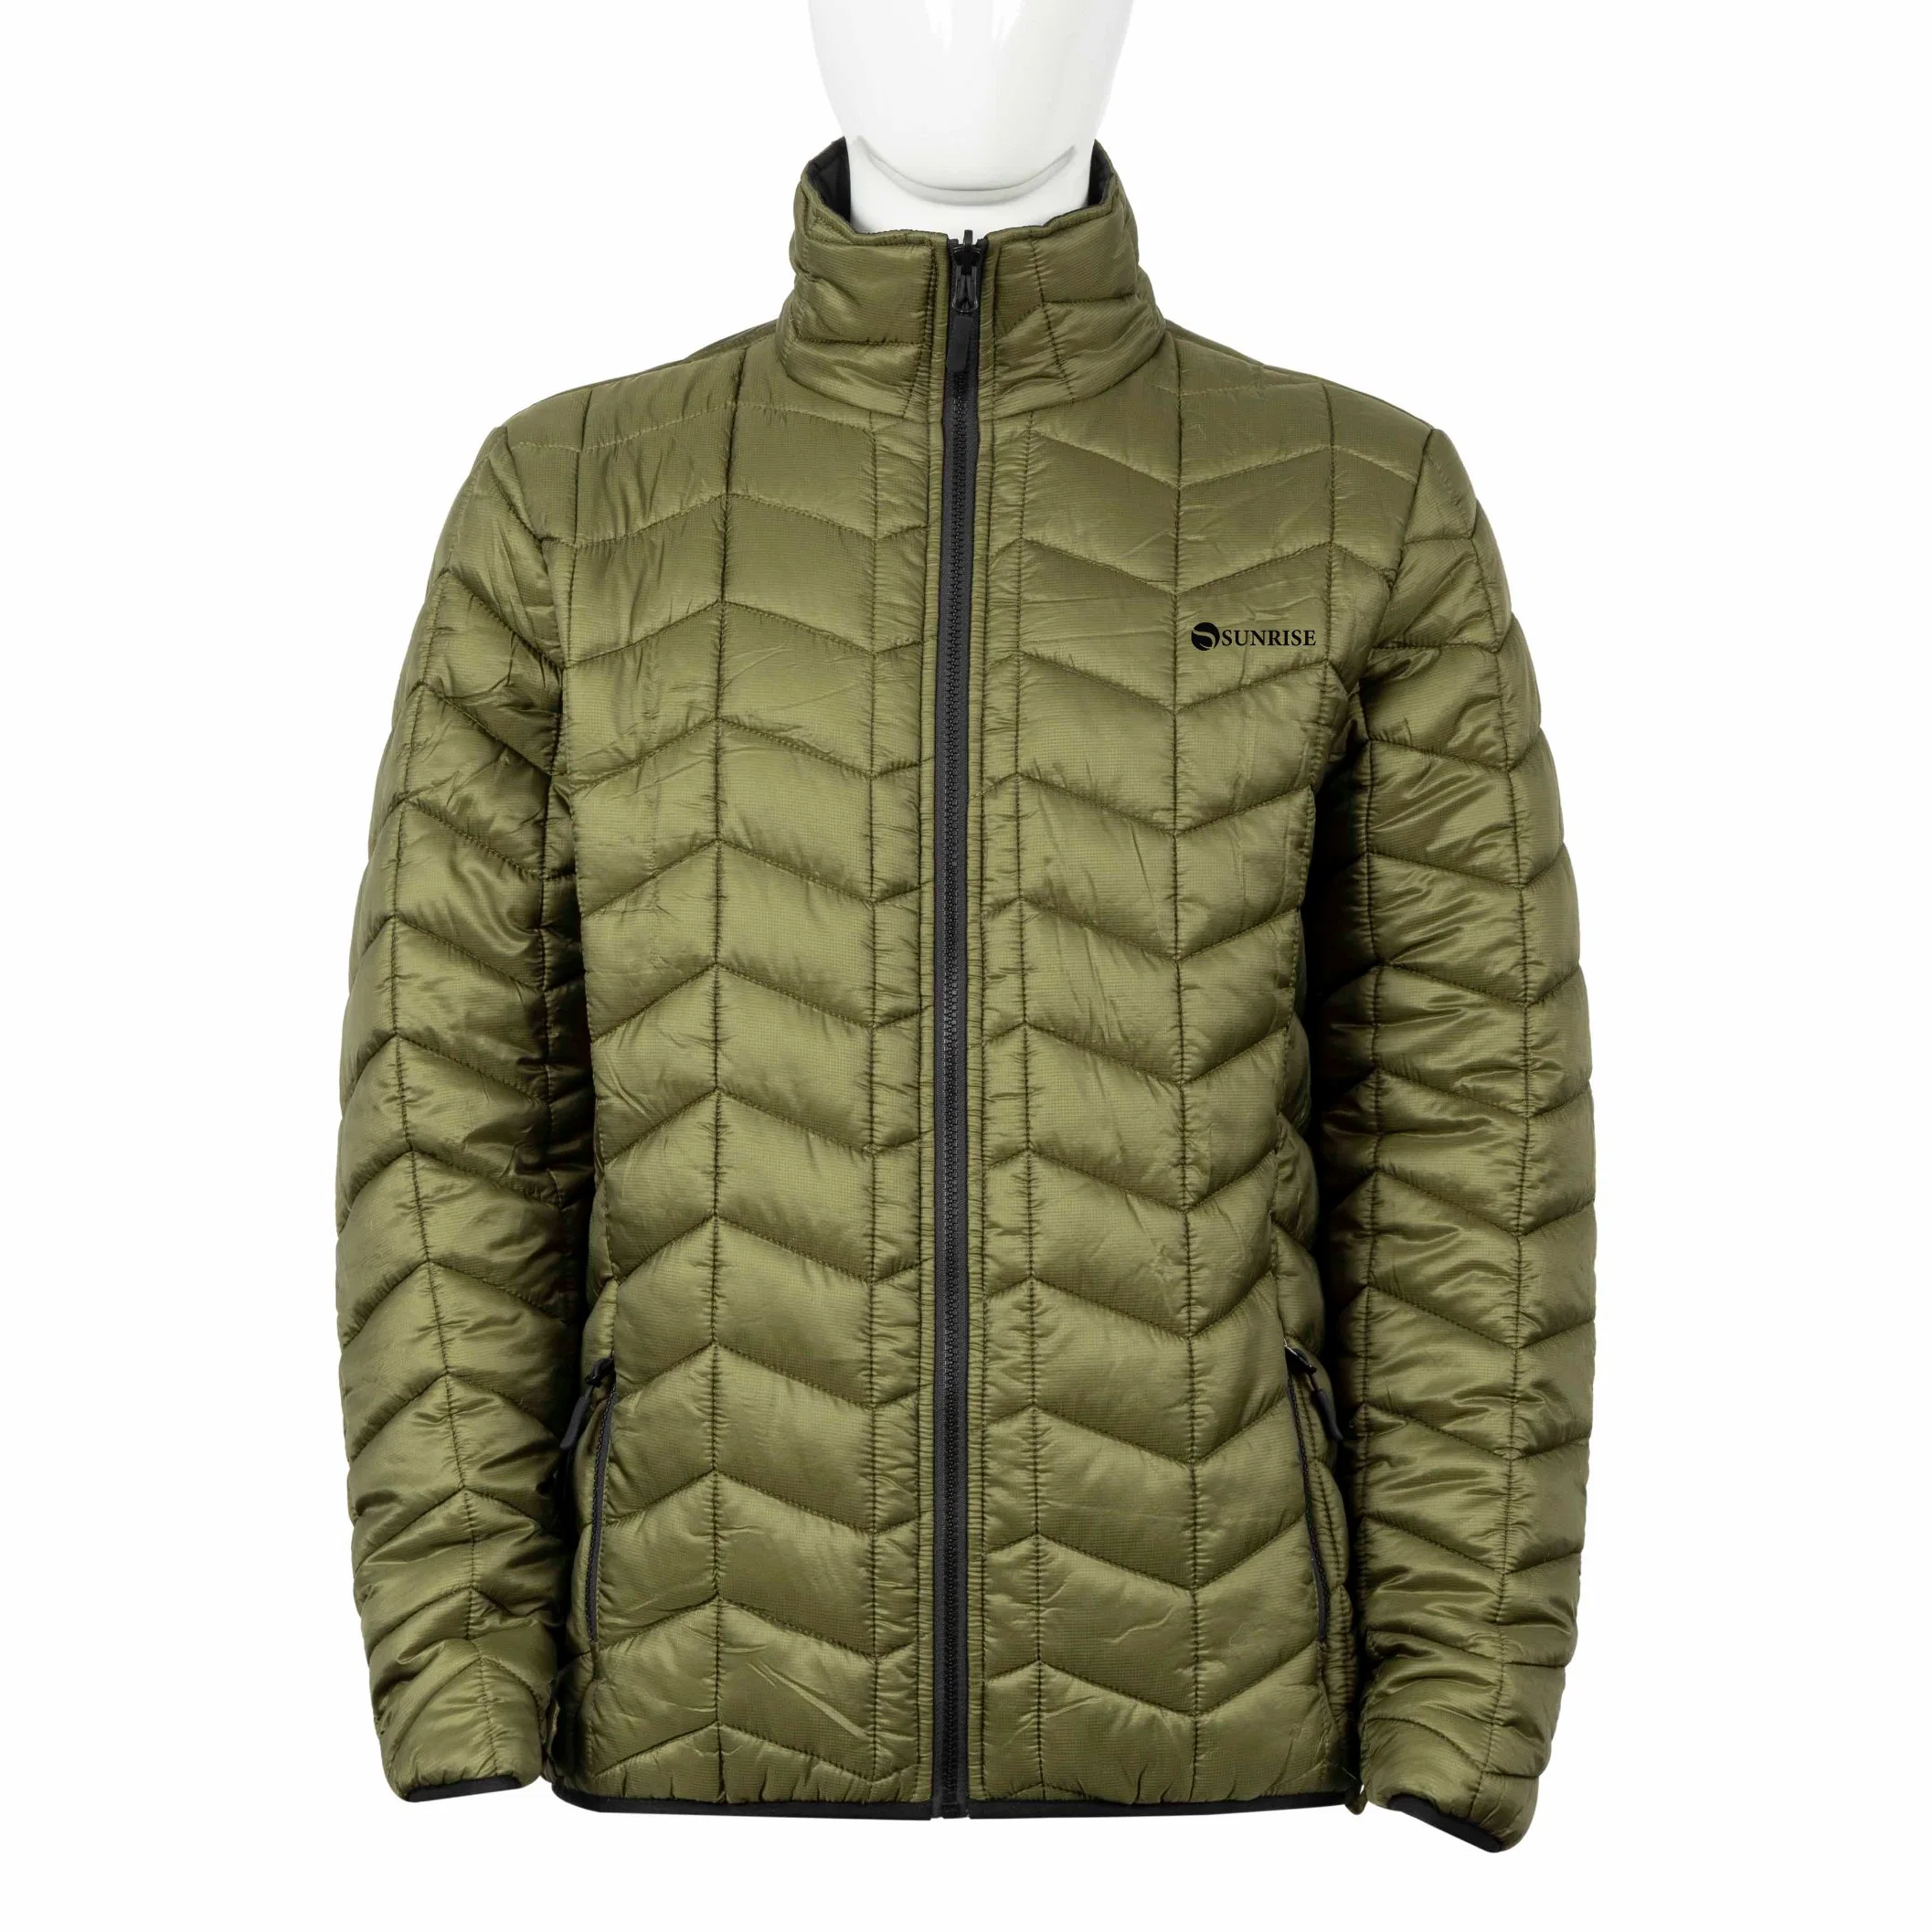 Exterior personalizado de alta calidad de los hombres Down Jacket chaqueta de Globo relleno de algodón untar